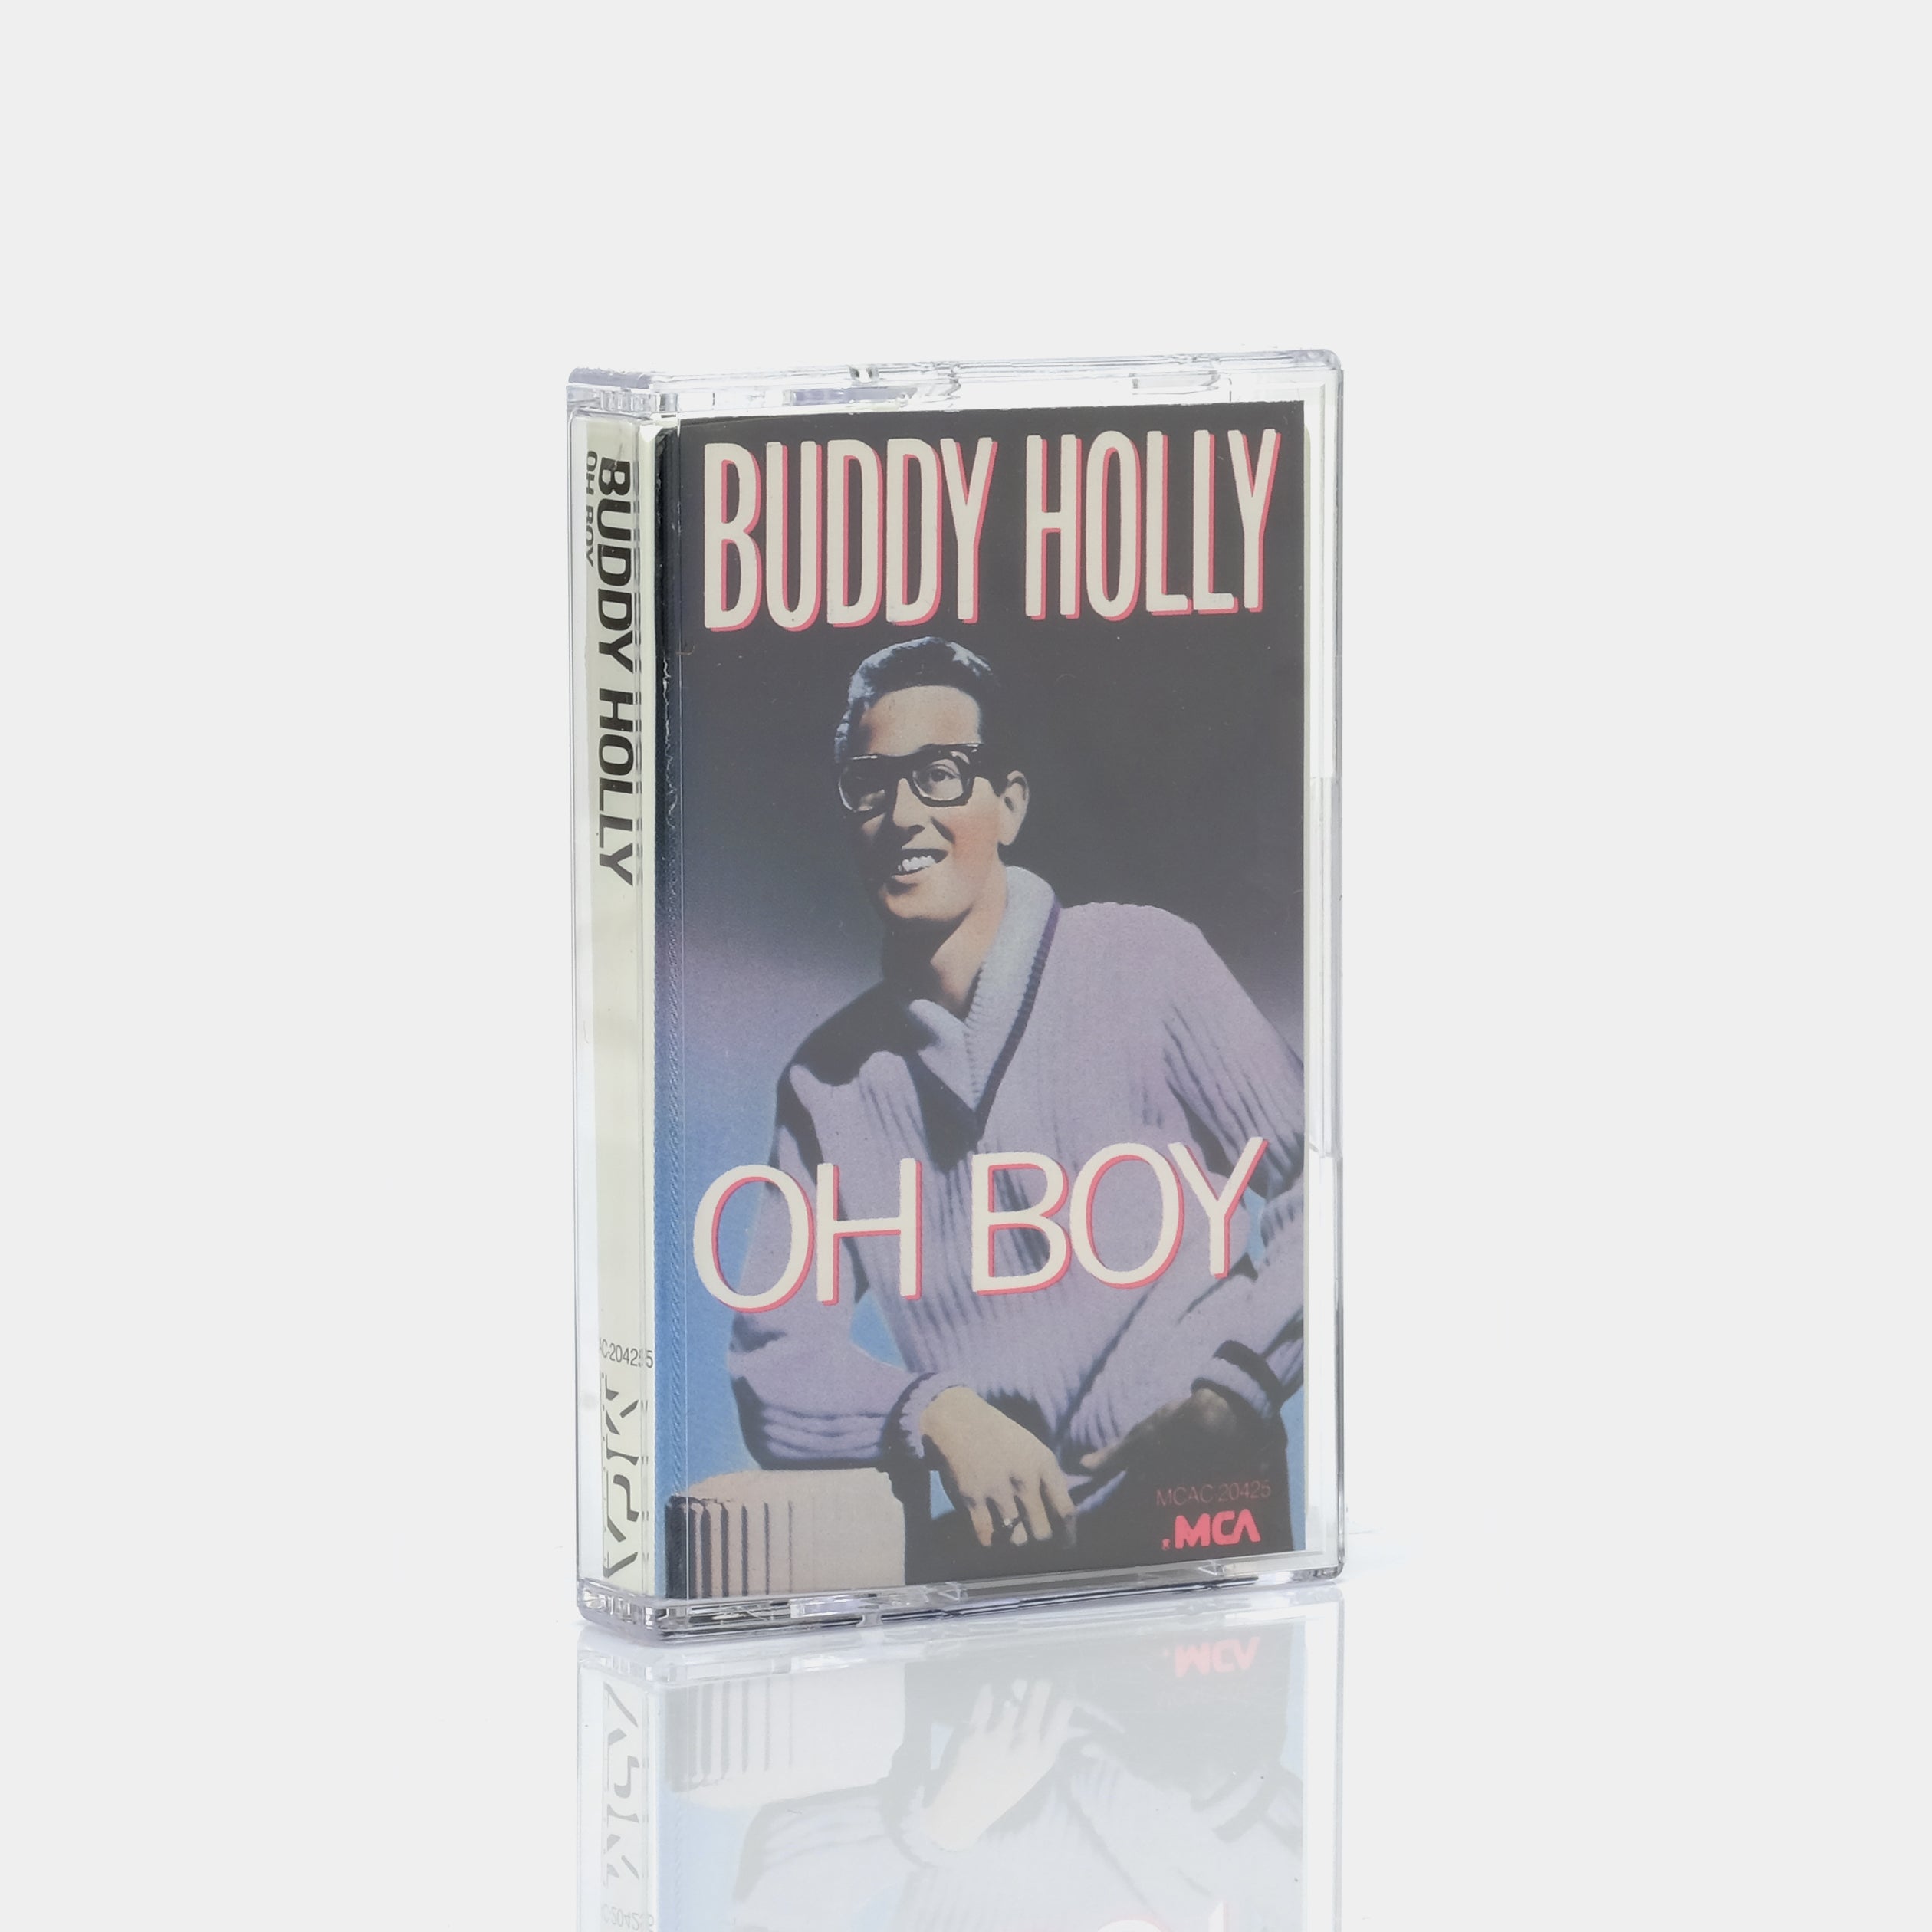 Buddy Holly - Oh Boy! Cassette Tape